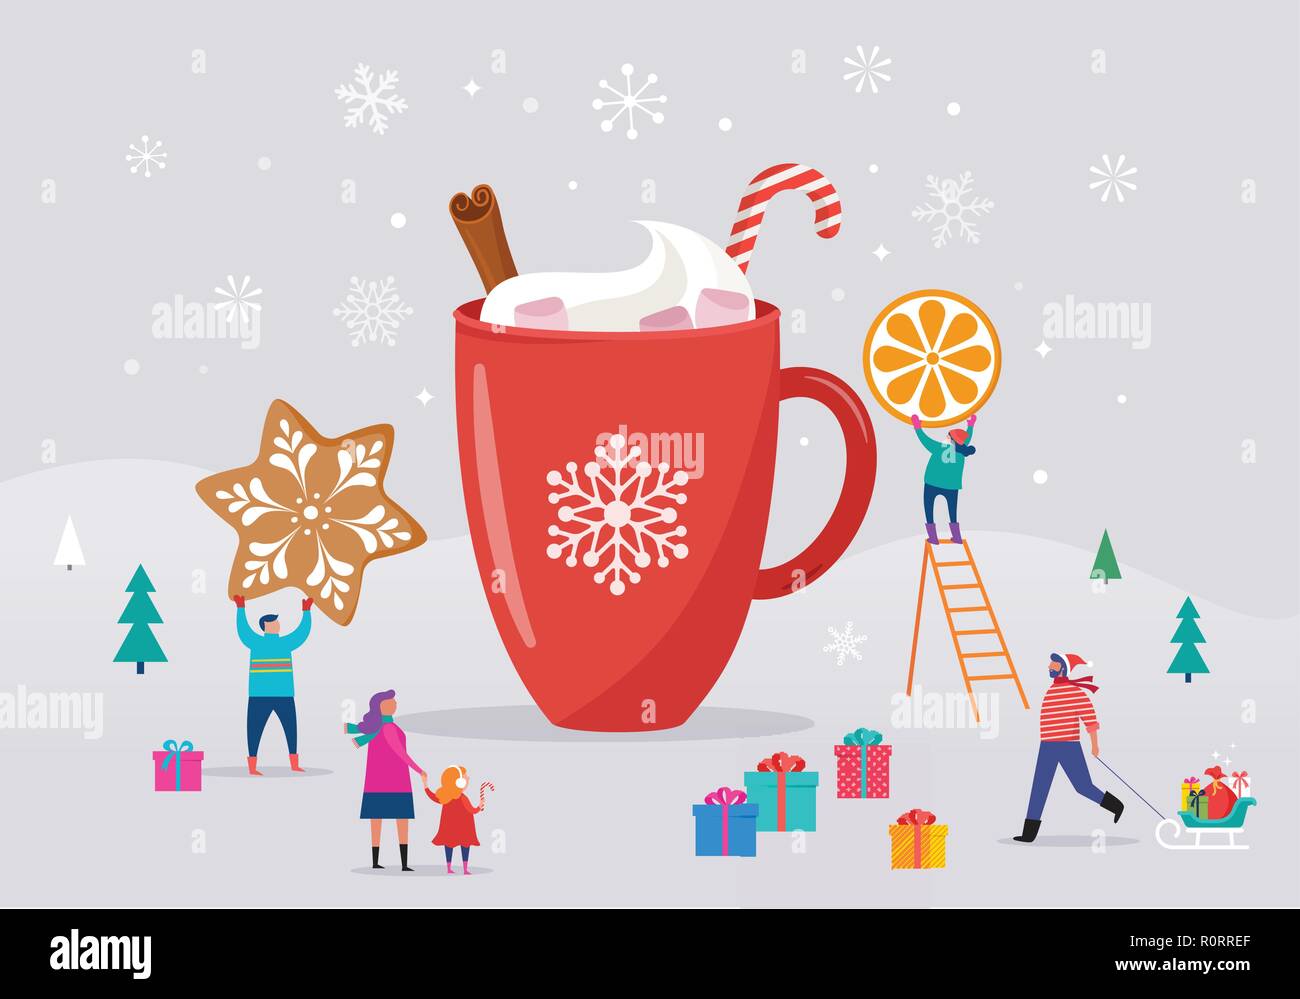 Frohe Weihnachten, Winter Szene mit einer großen Tasse Kakao und kleinen Leute, junge Männer und Frauen, Familien Spaß im Schnee, Skifahren, Snowboarden, Rodeln, Eislaufen Stock Vektor